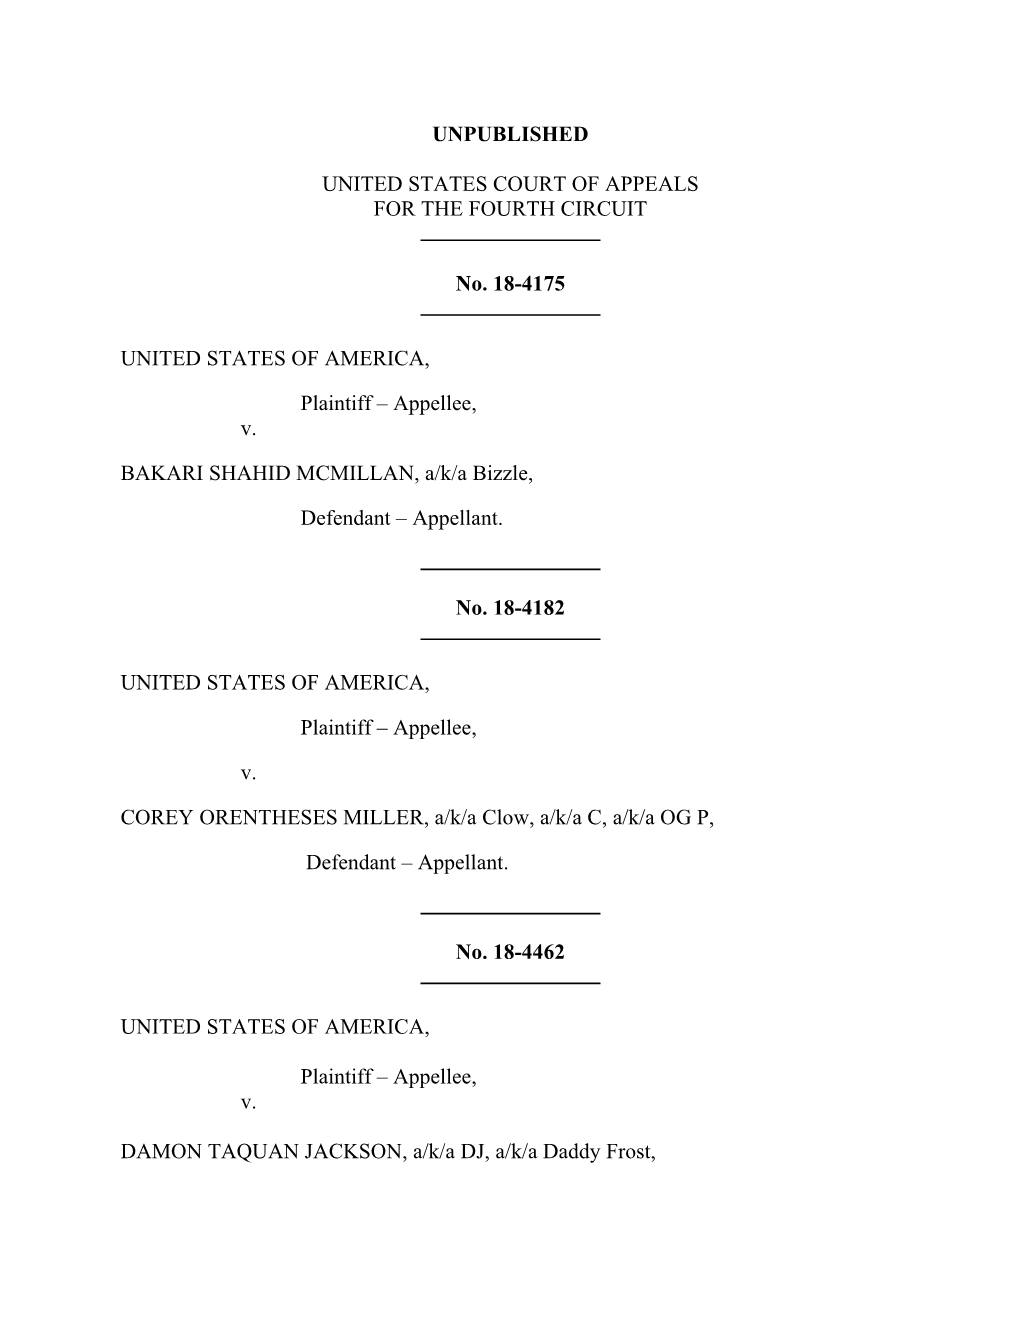 Download United States V. Jackson Et Al. Court of Appeals Decision